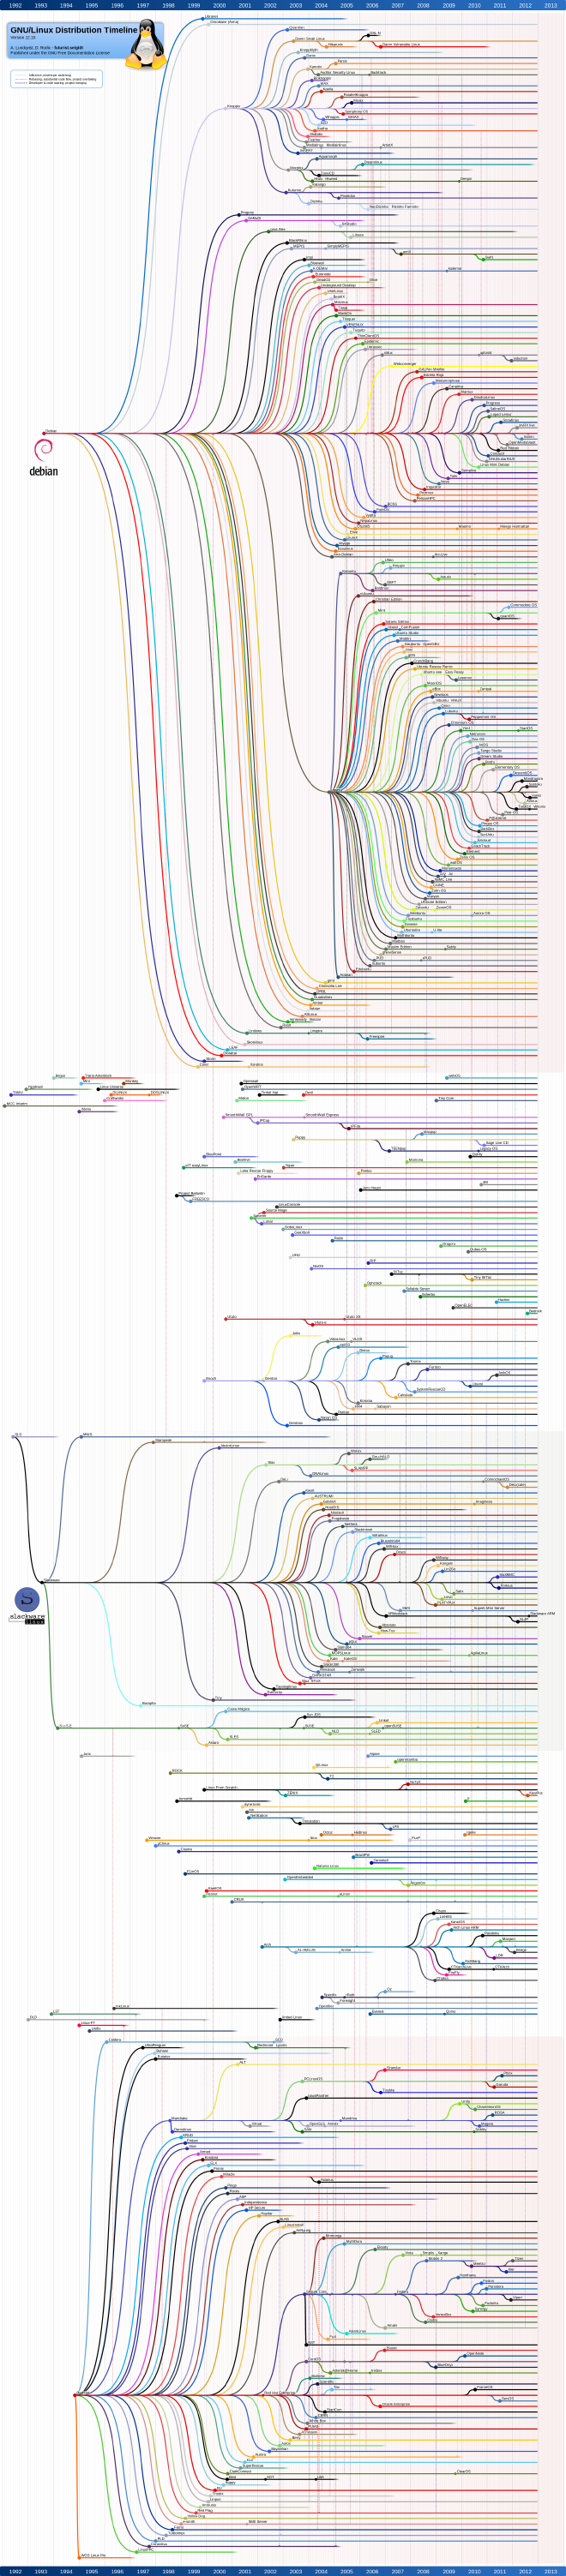 Linux_Distribution_Timeline.2